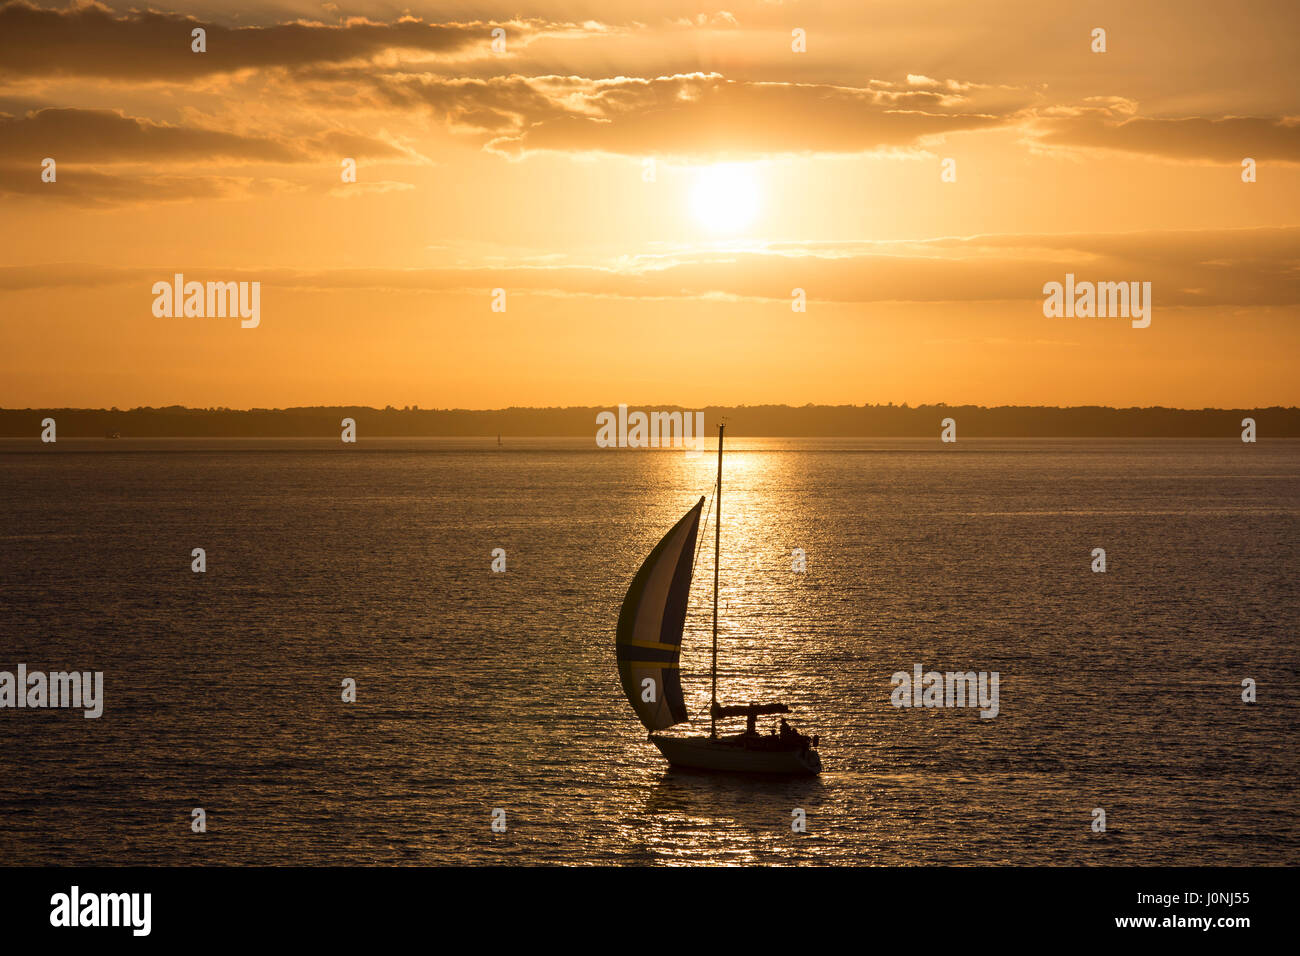 Bateau à voile solitaire en mer au coucher du soleil par la rivière Solent, UK Banque D'Images